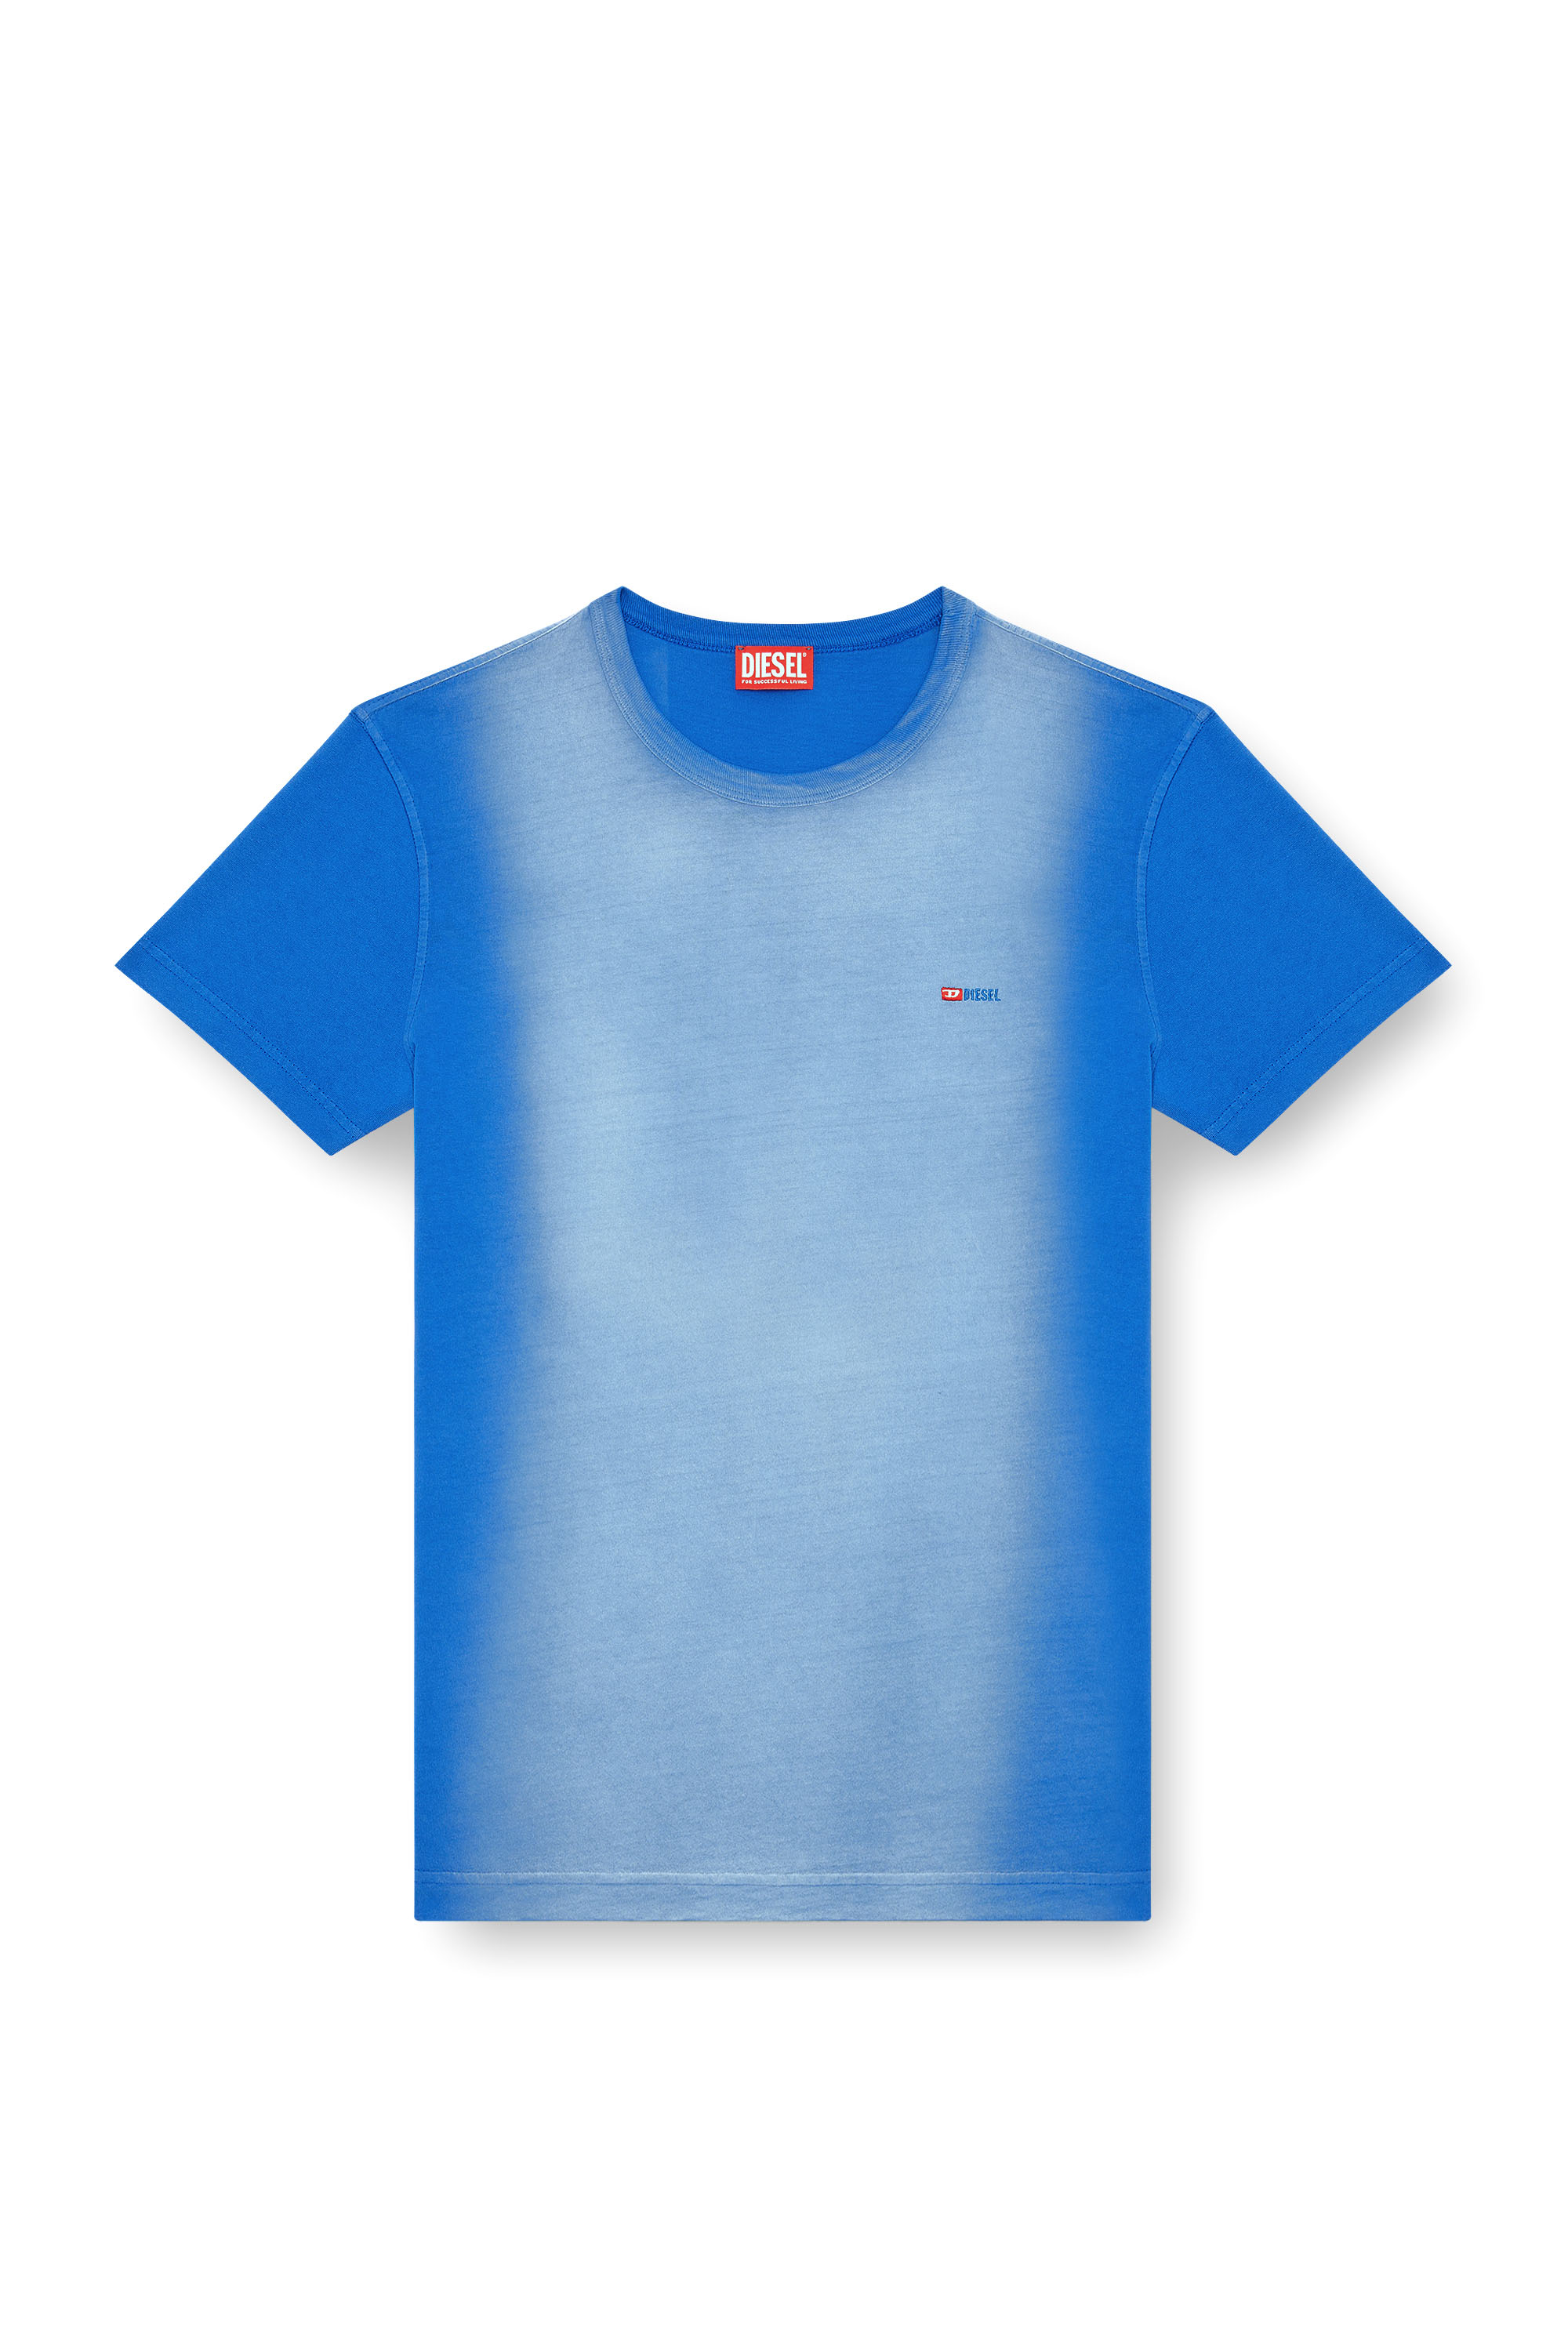 Diesel - T-ADJUST-Q2, Hombre Camiseta en tejido de algodón rociado in Azul marino - Image 3